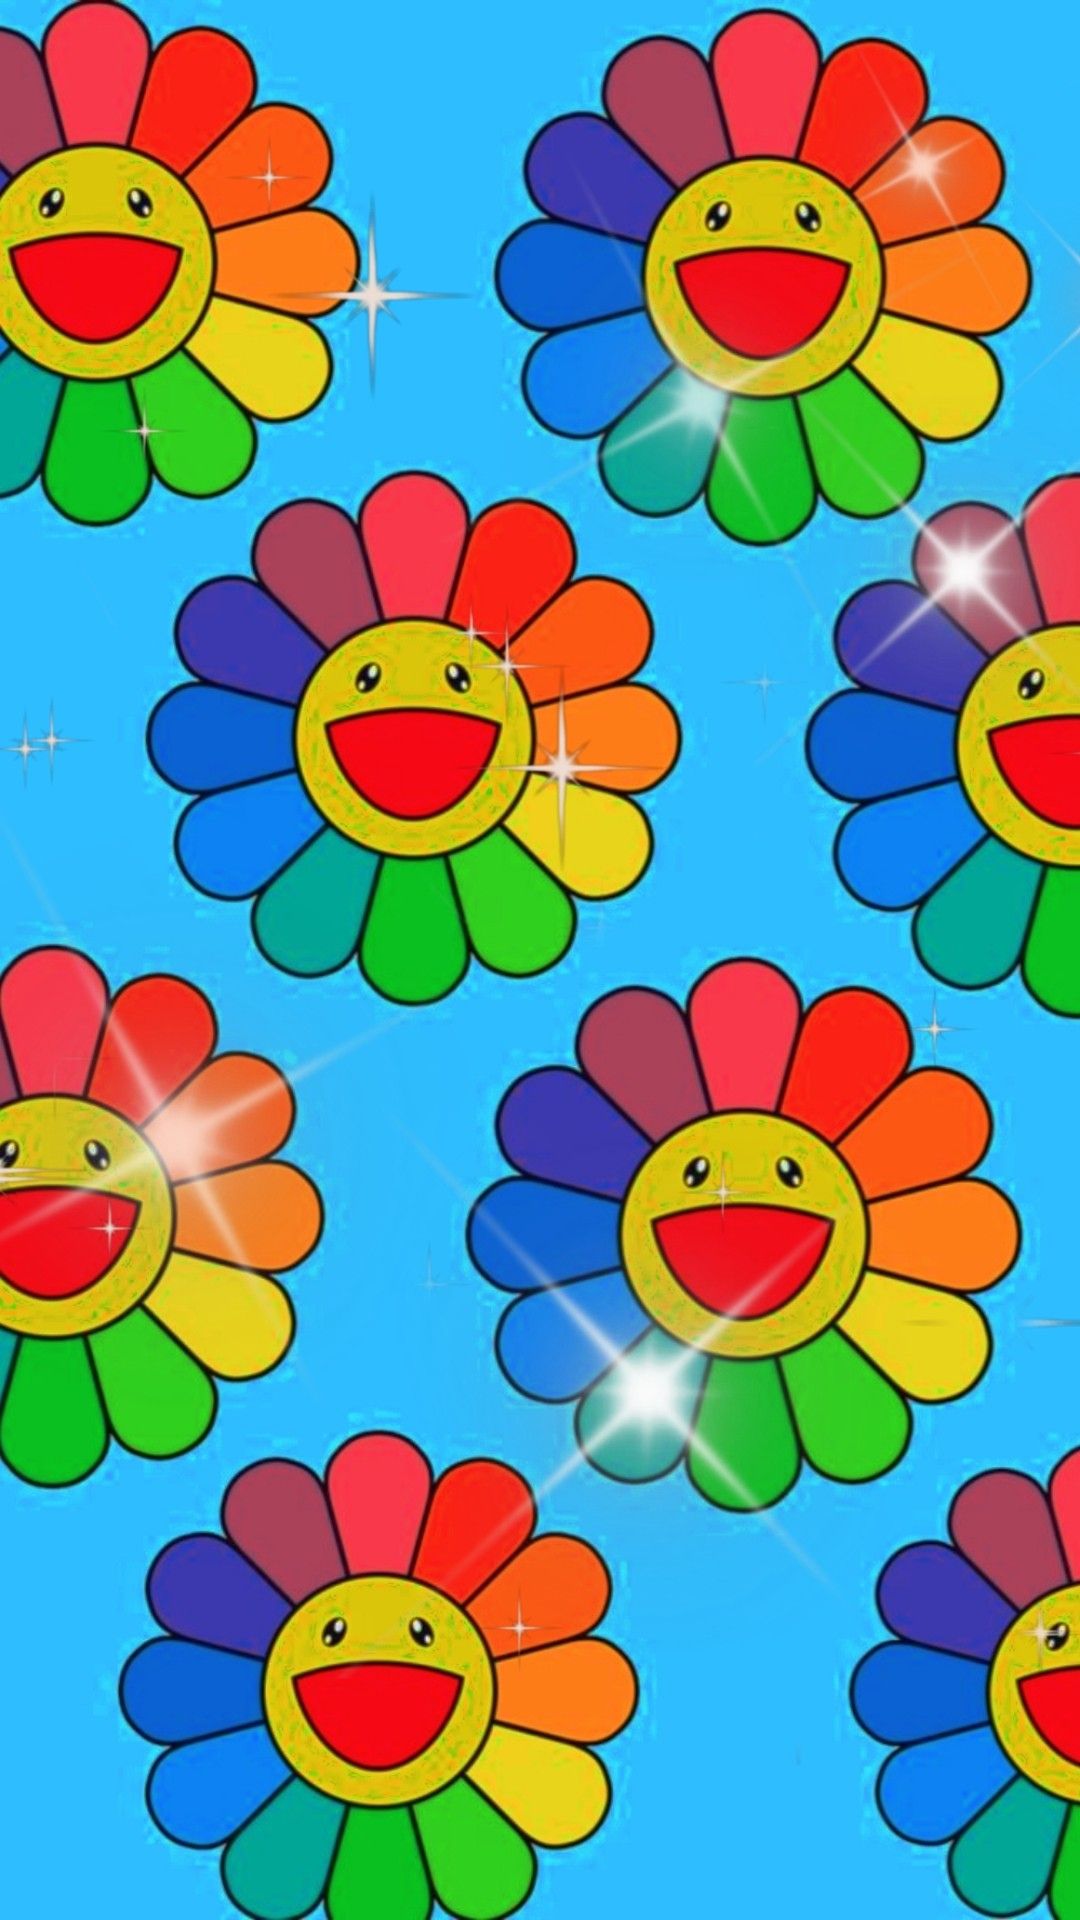 View 20 Flowers Indie Kid Aesthetic Wallpaper iPhone